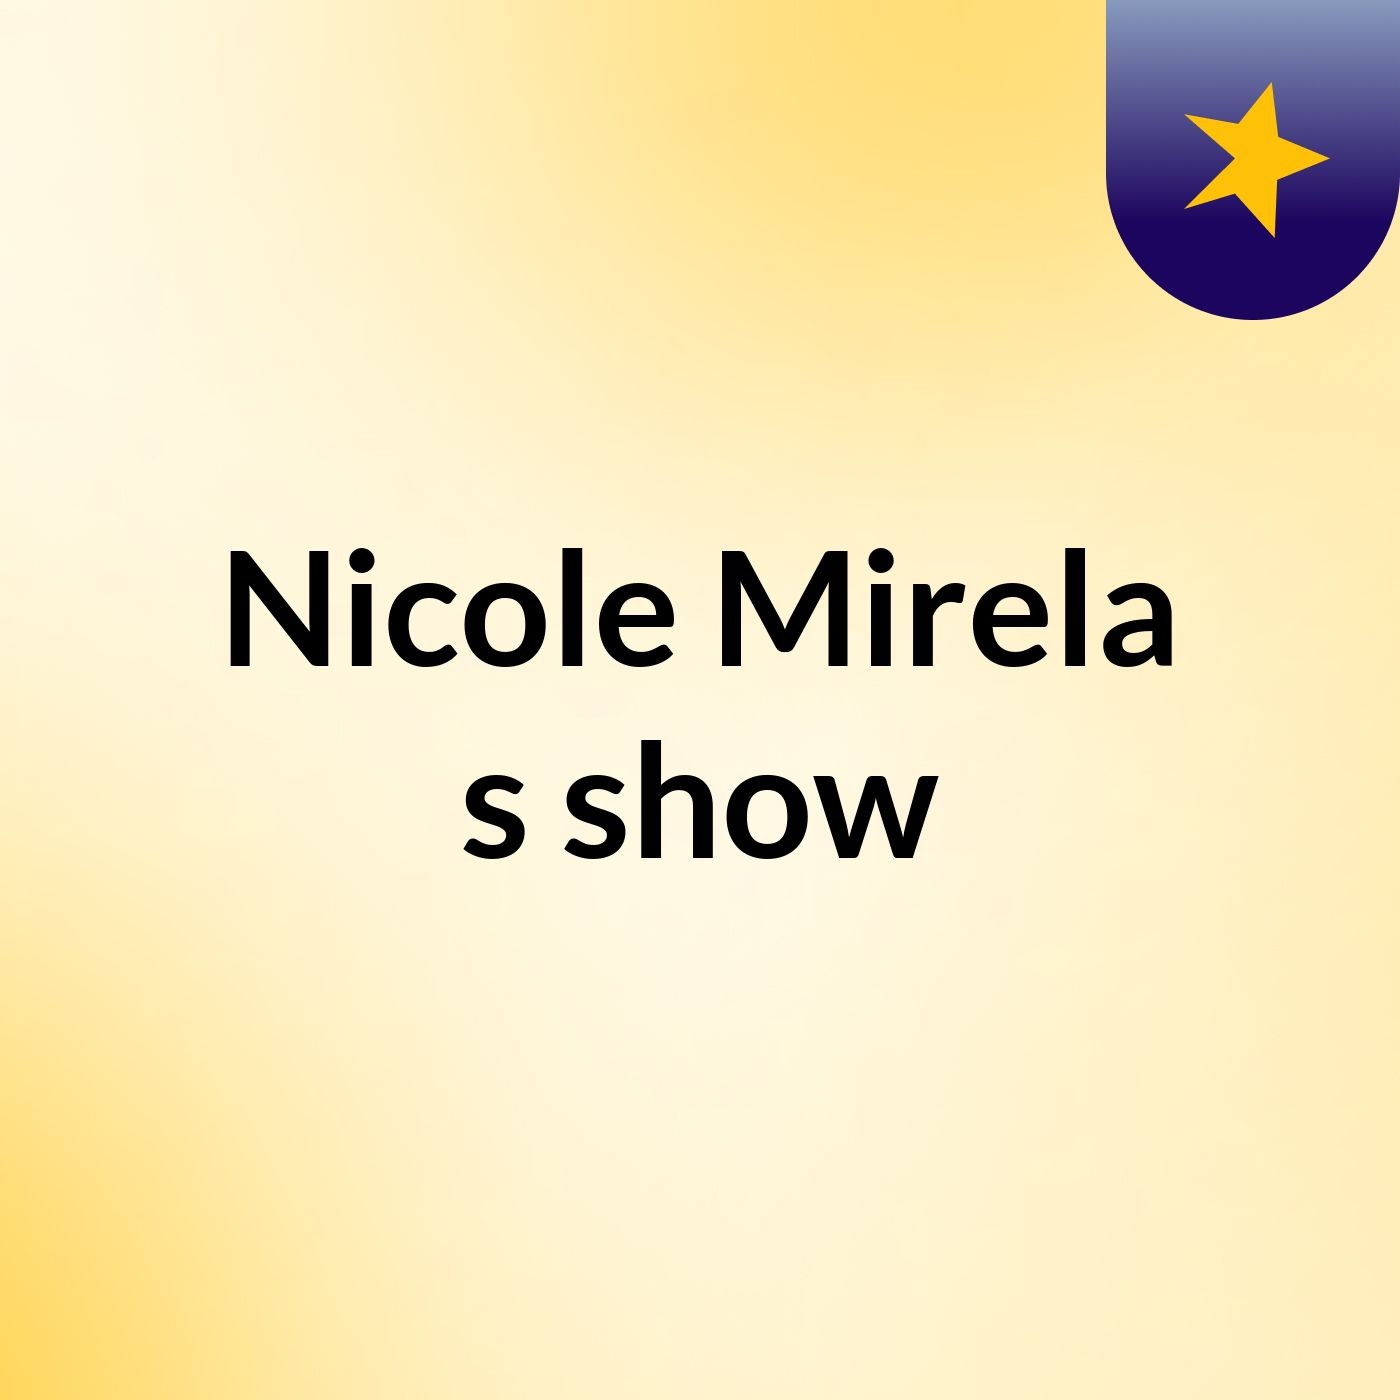 Nicole Mirela's show